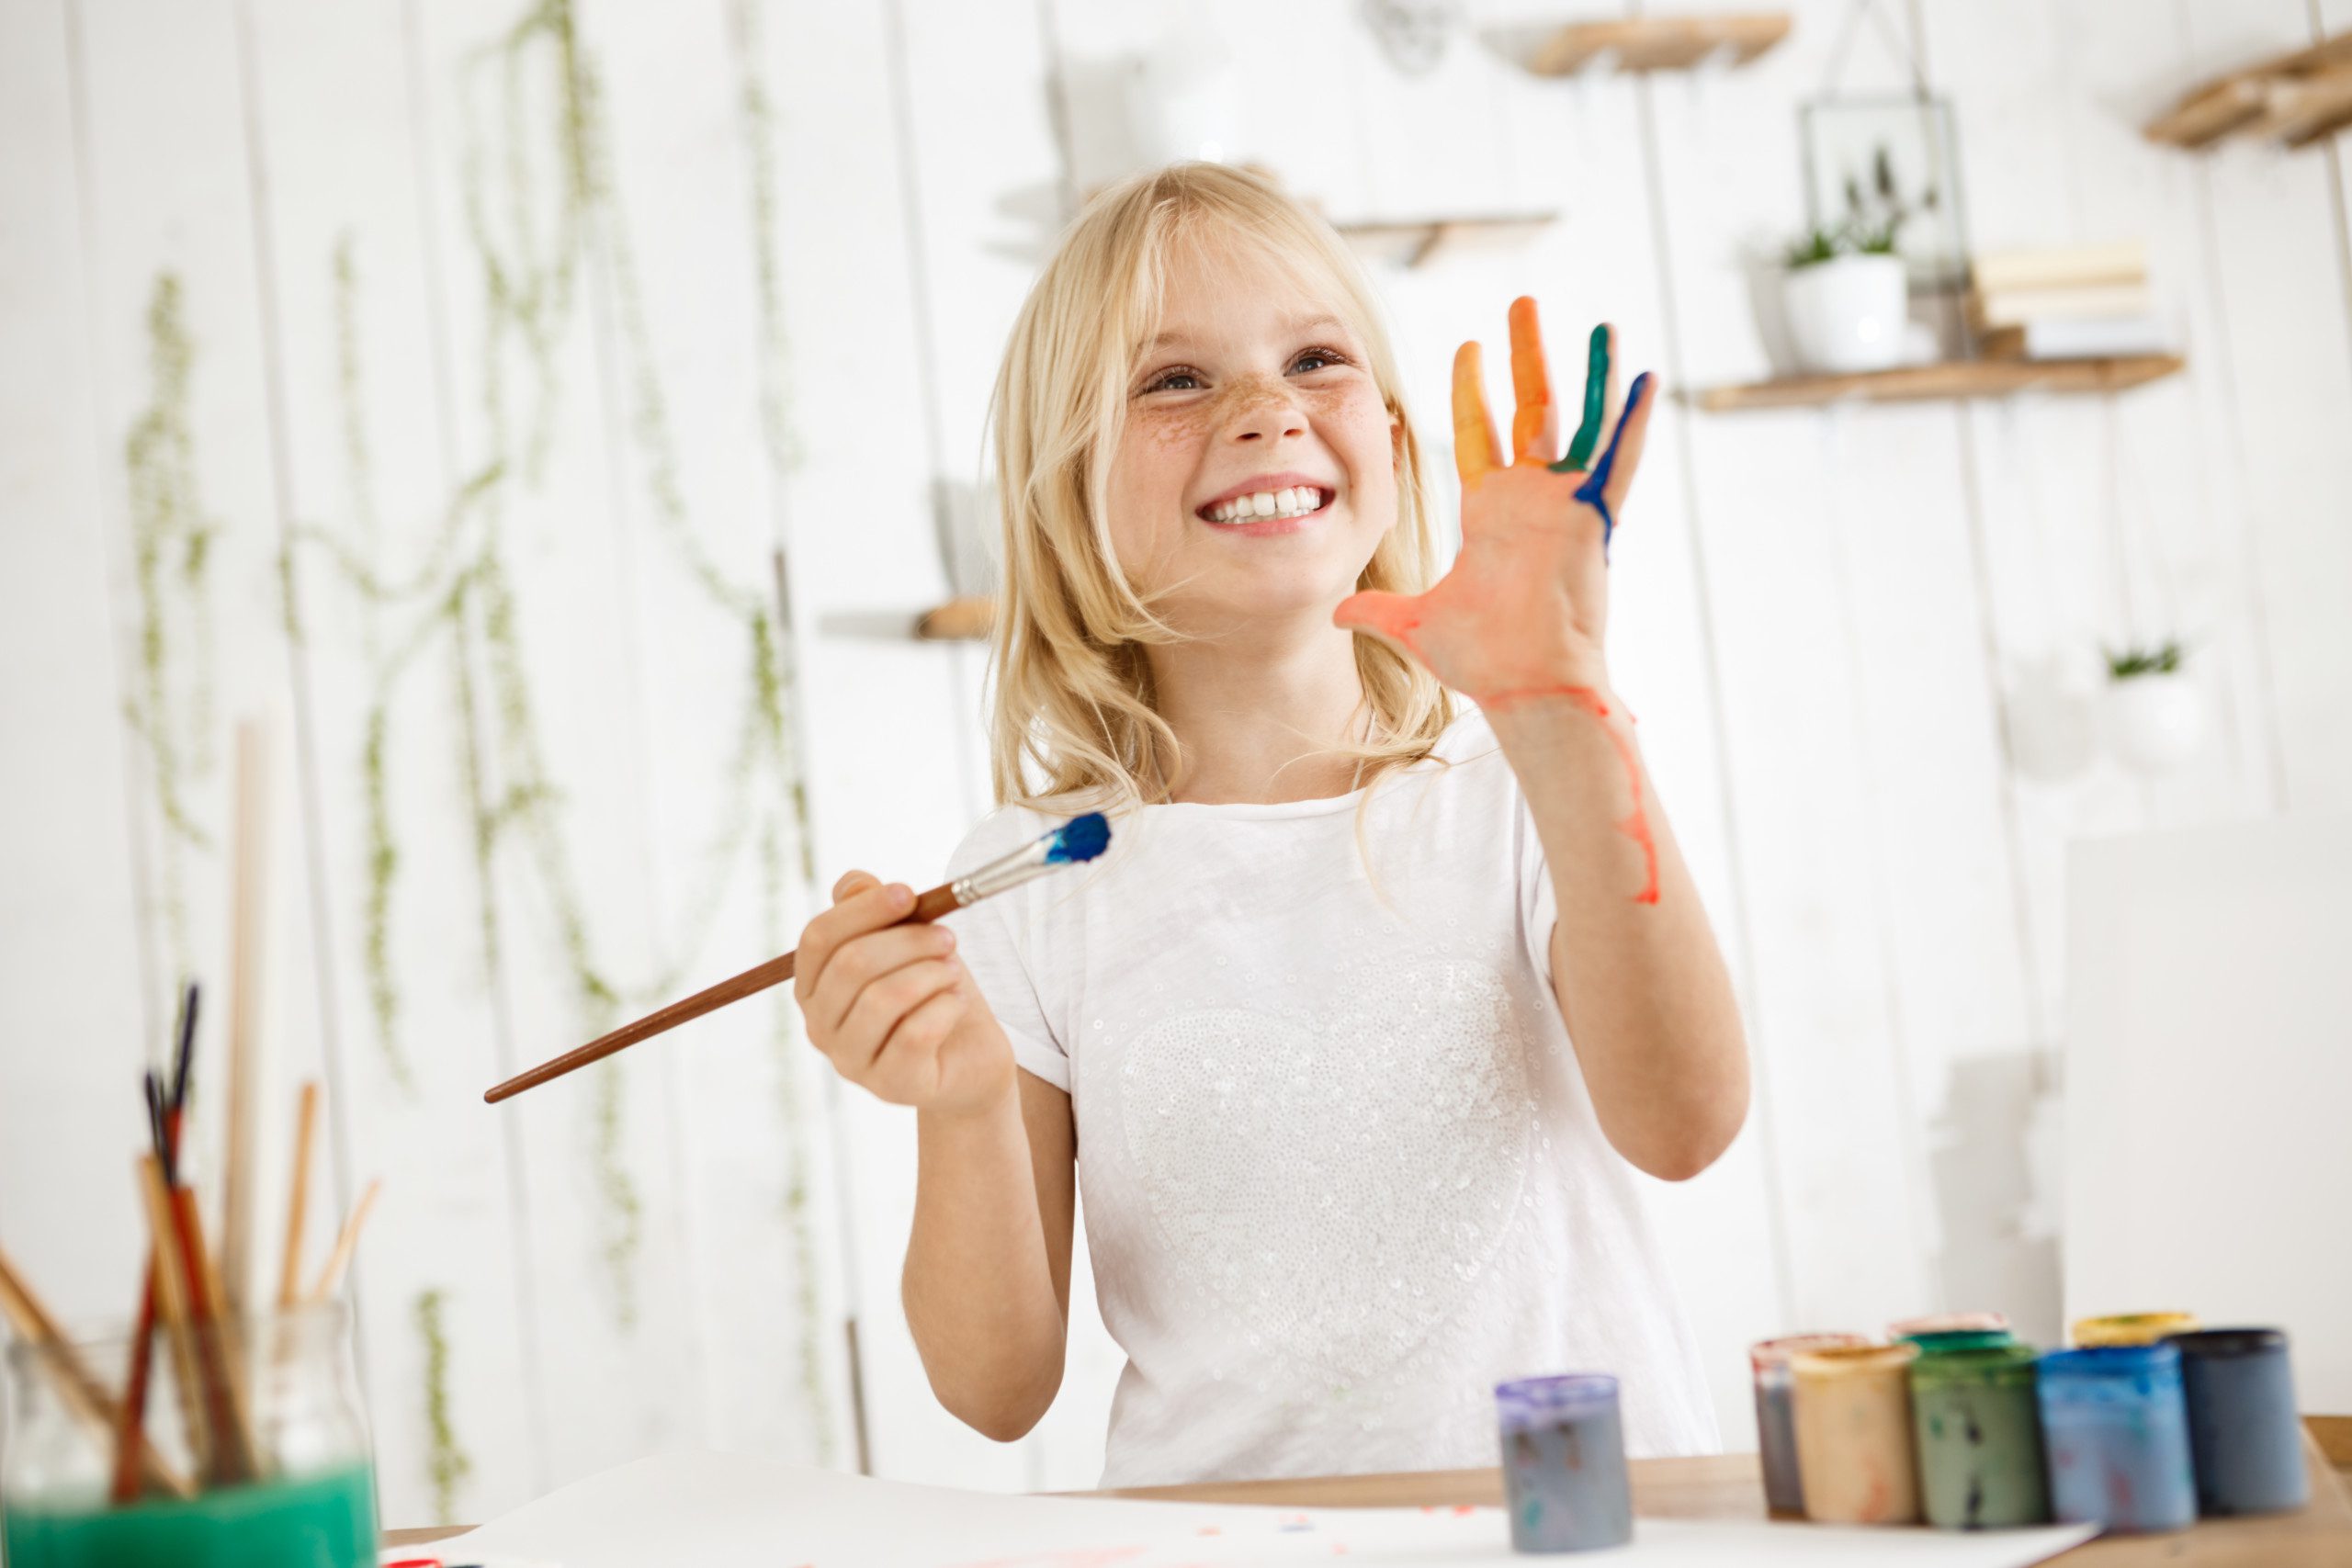 Imagem e uma menina brincando com tintas com um pincel na mão e a outra mão suja de tinta.